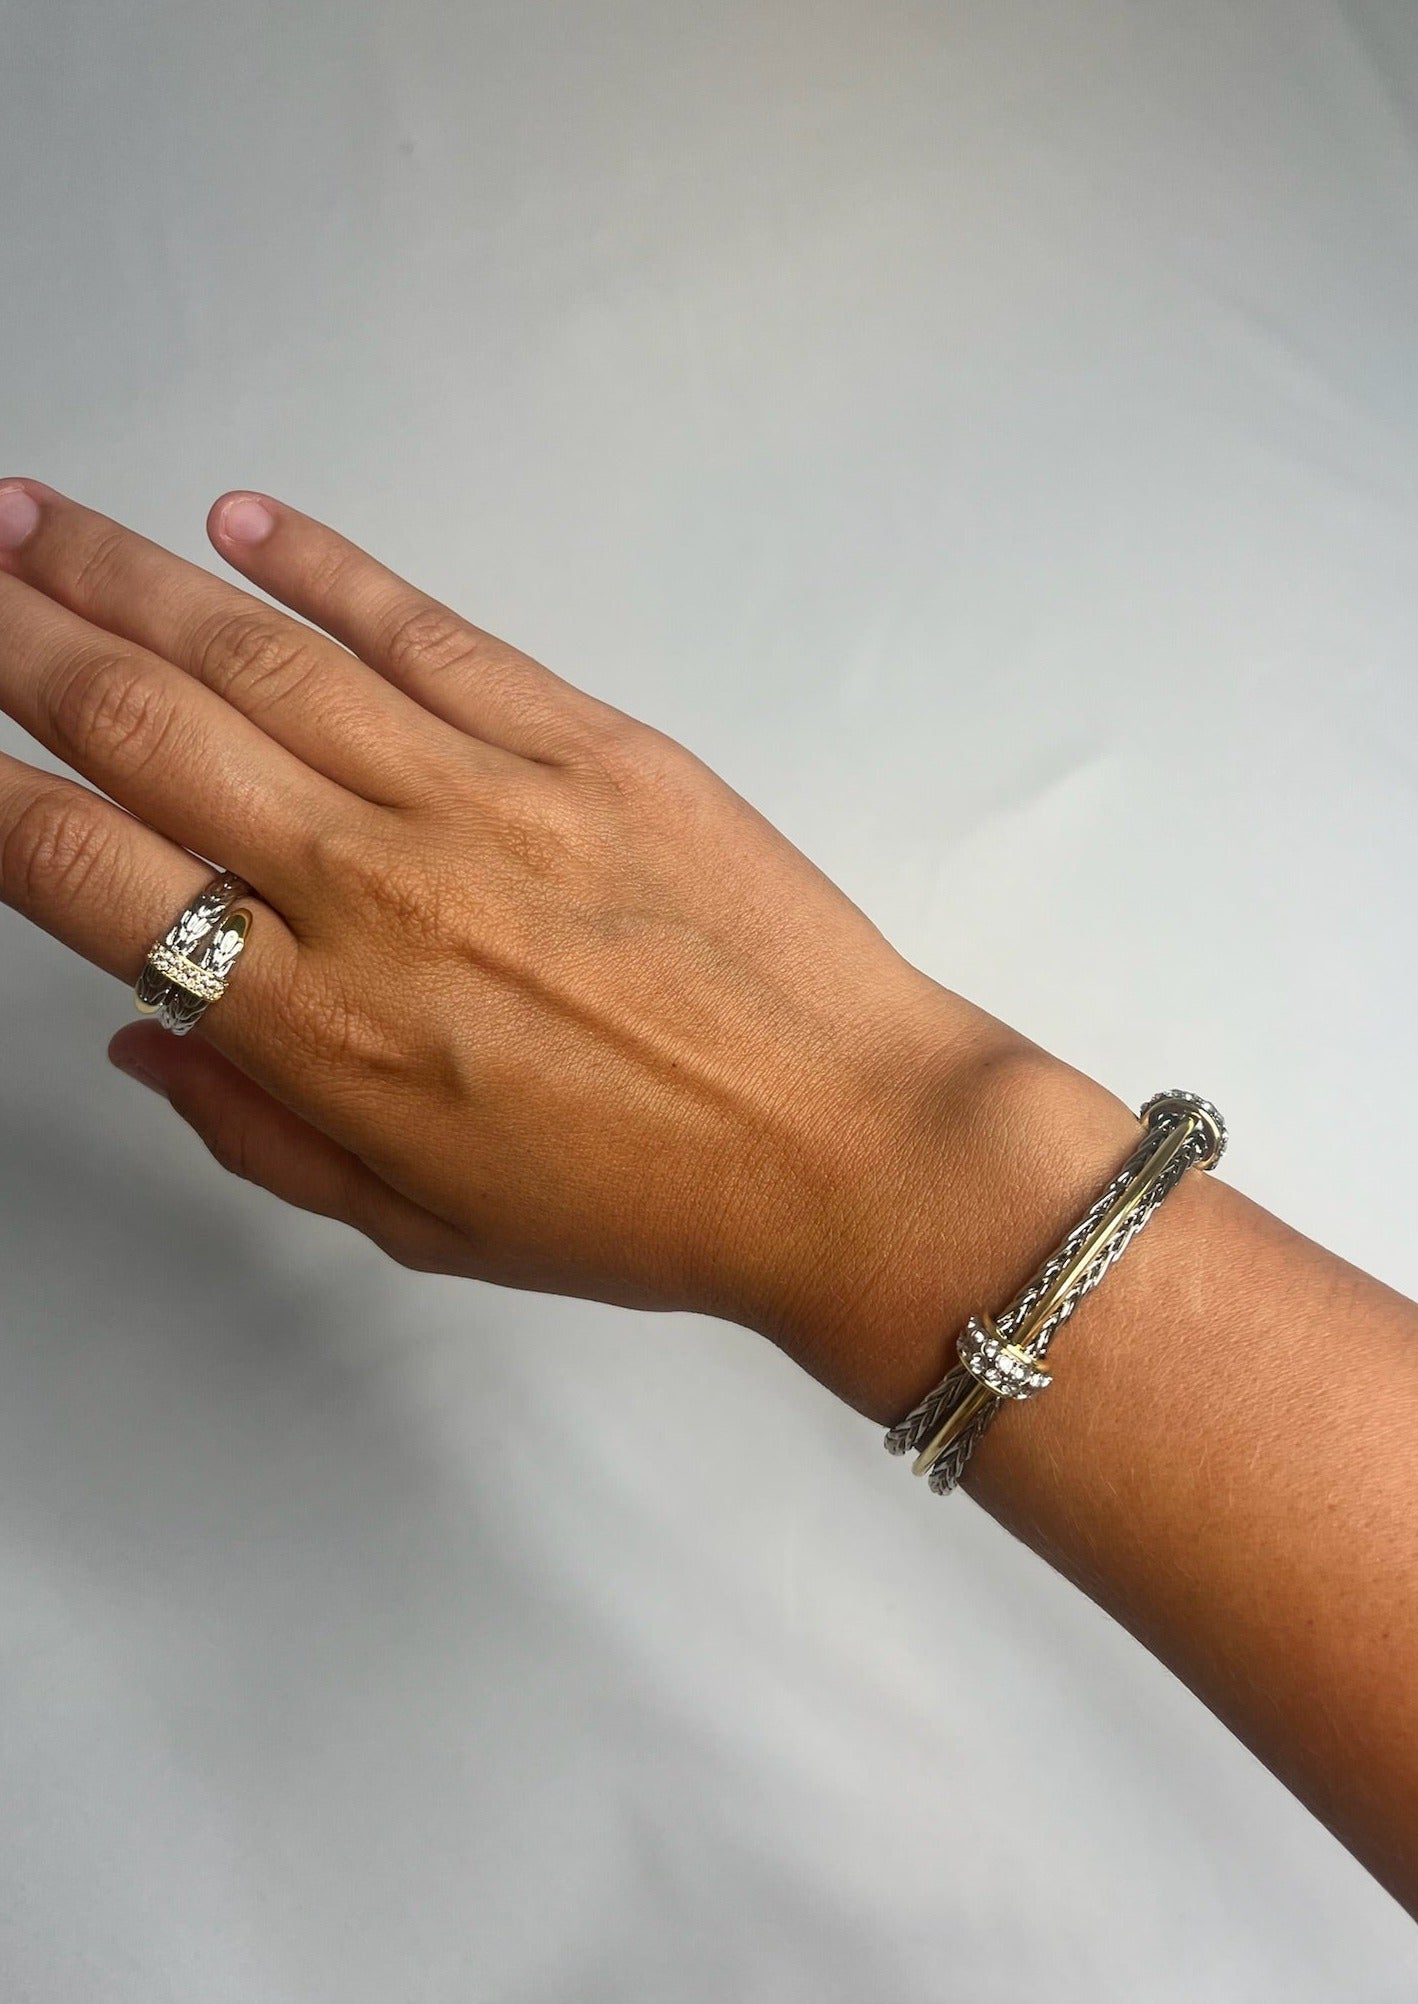 Silver/Gold Cuff Bracelet